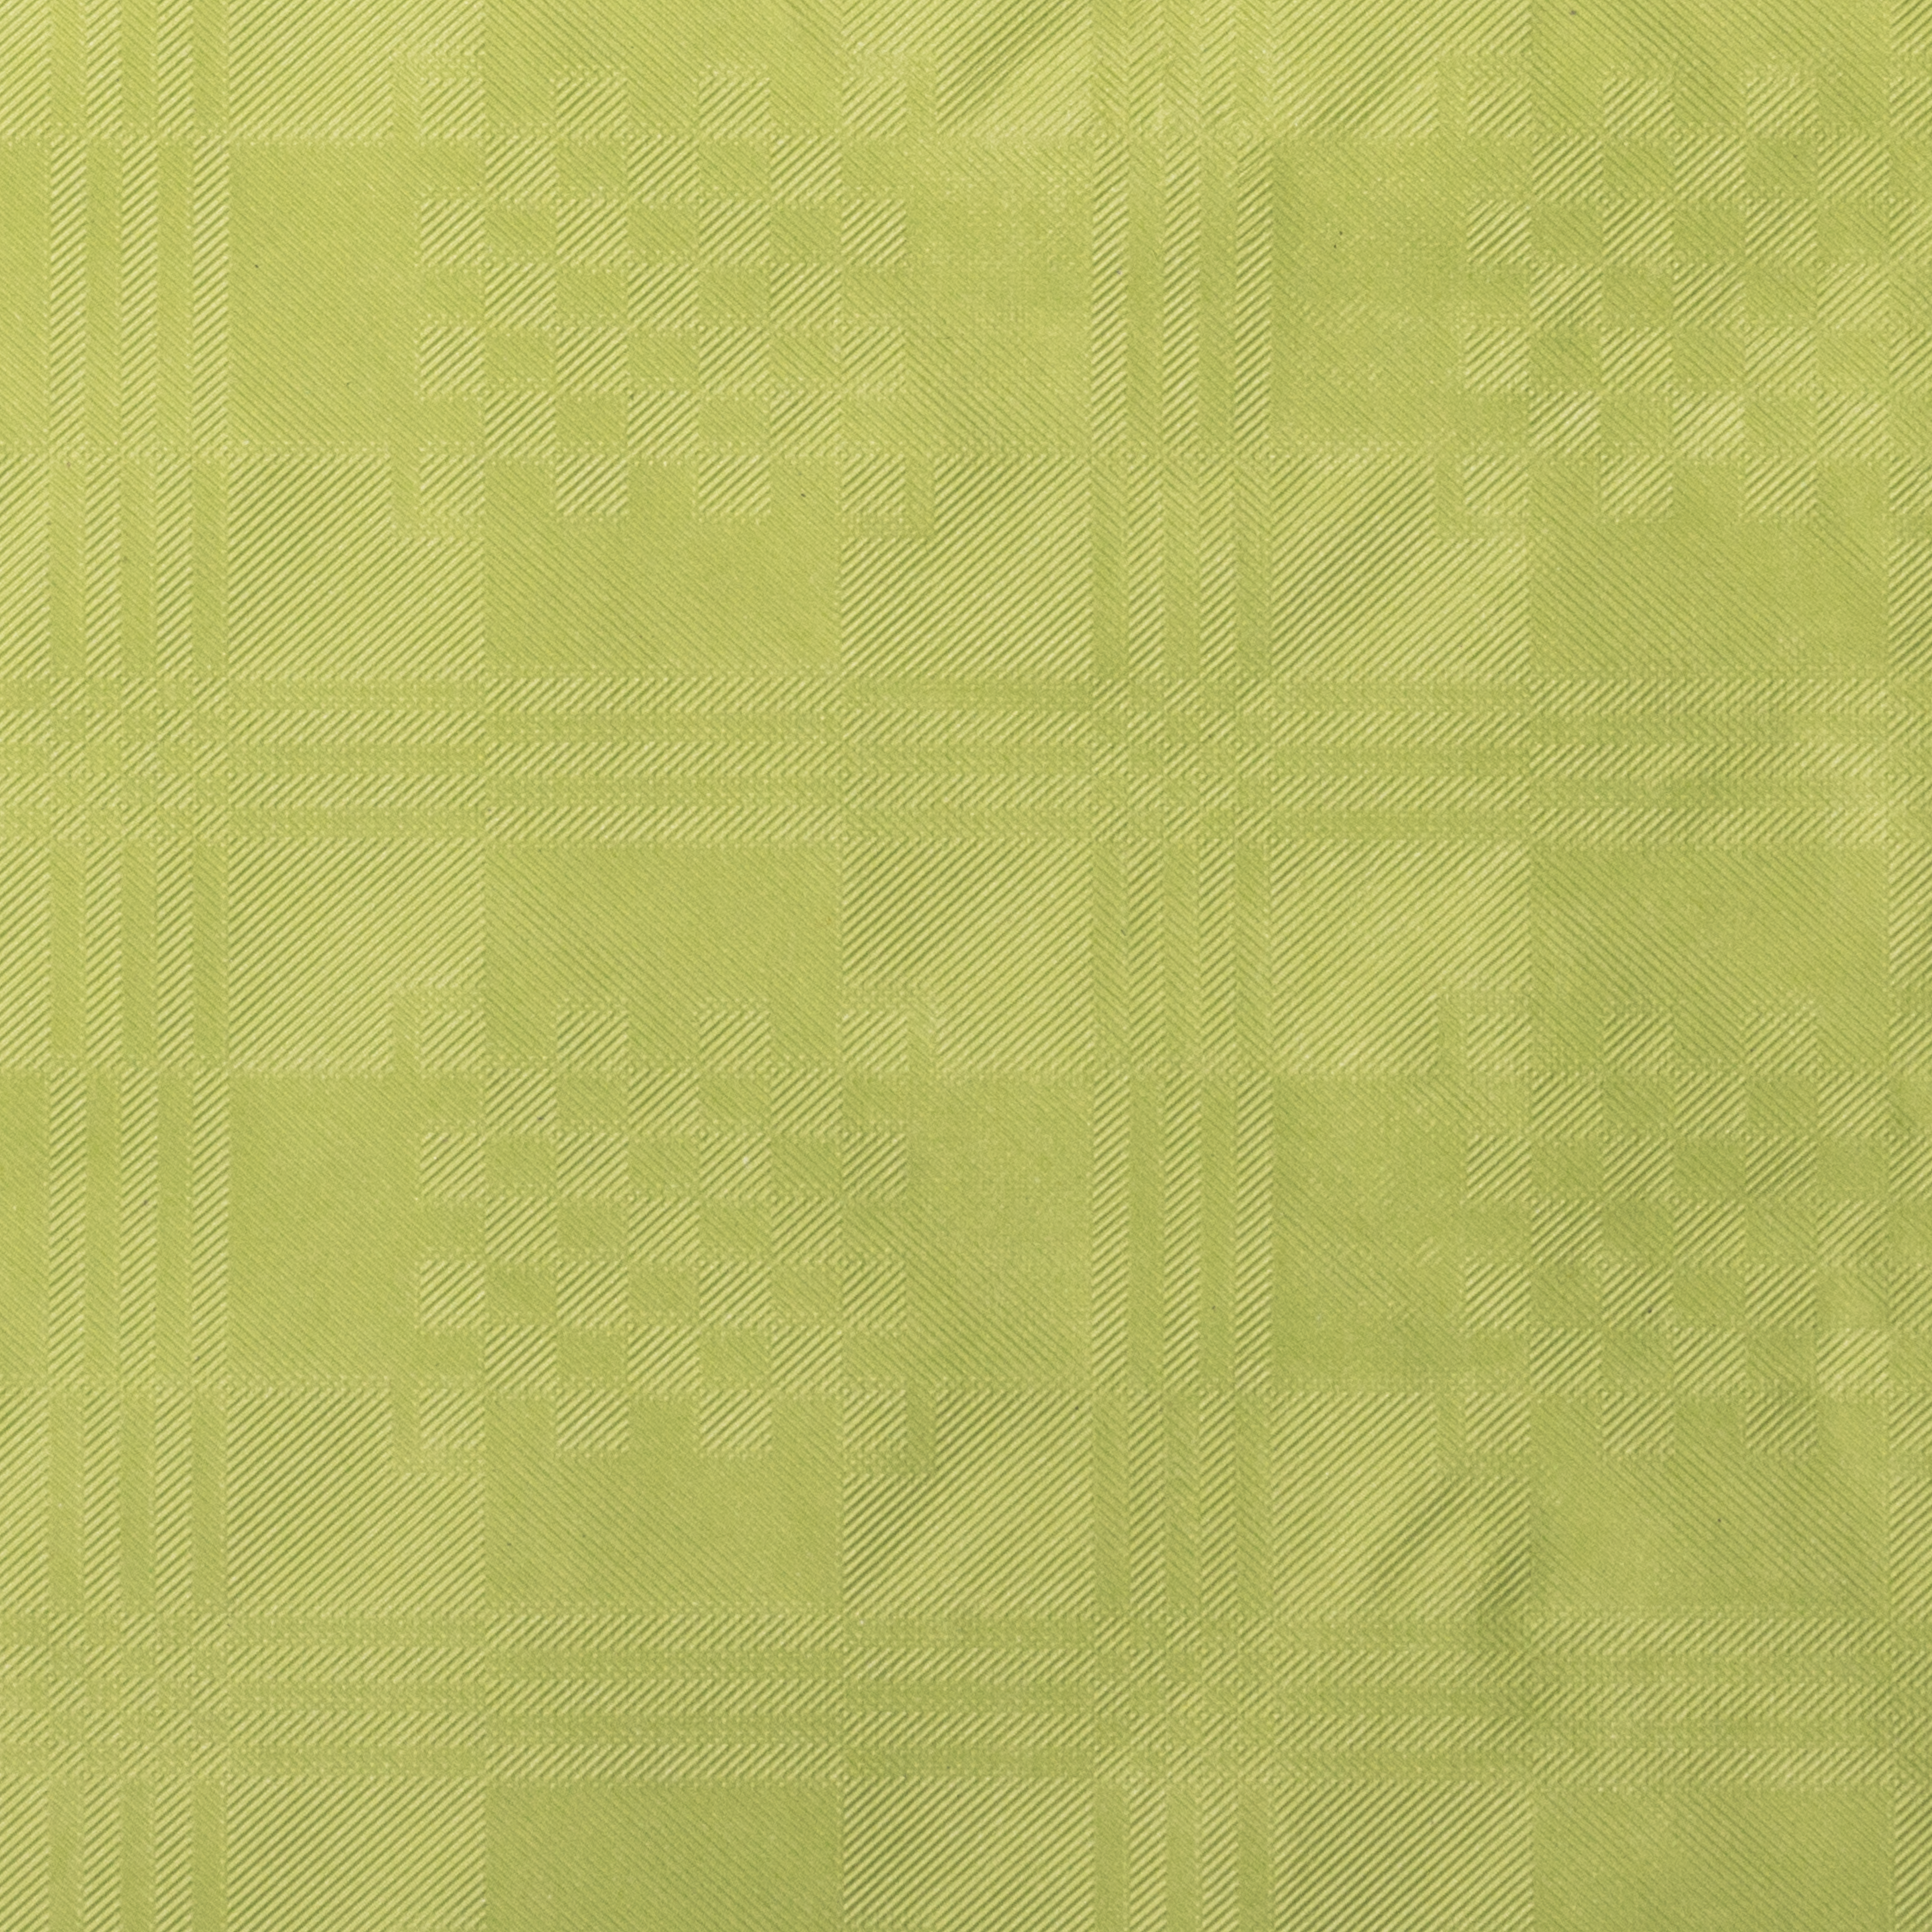 Tischtuchpapier uni apfelgrün, 1 x 10 m